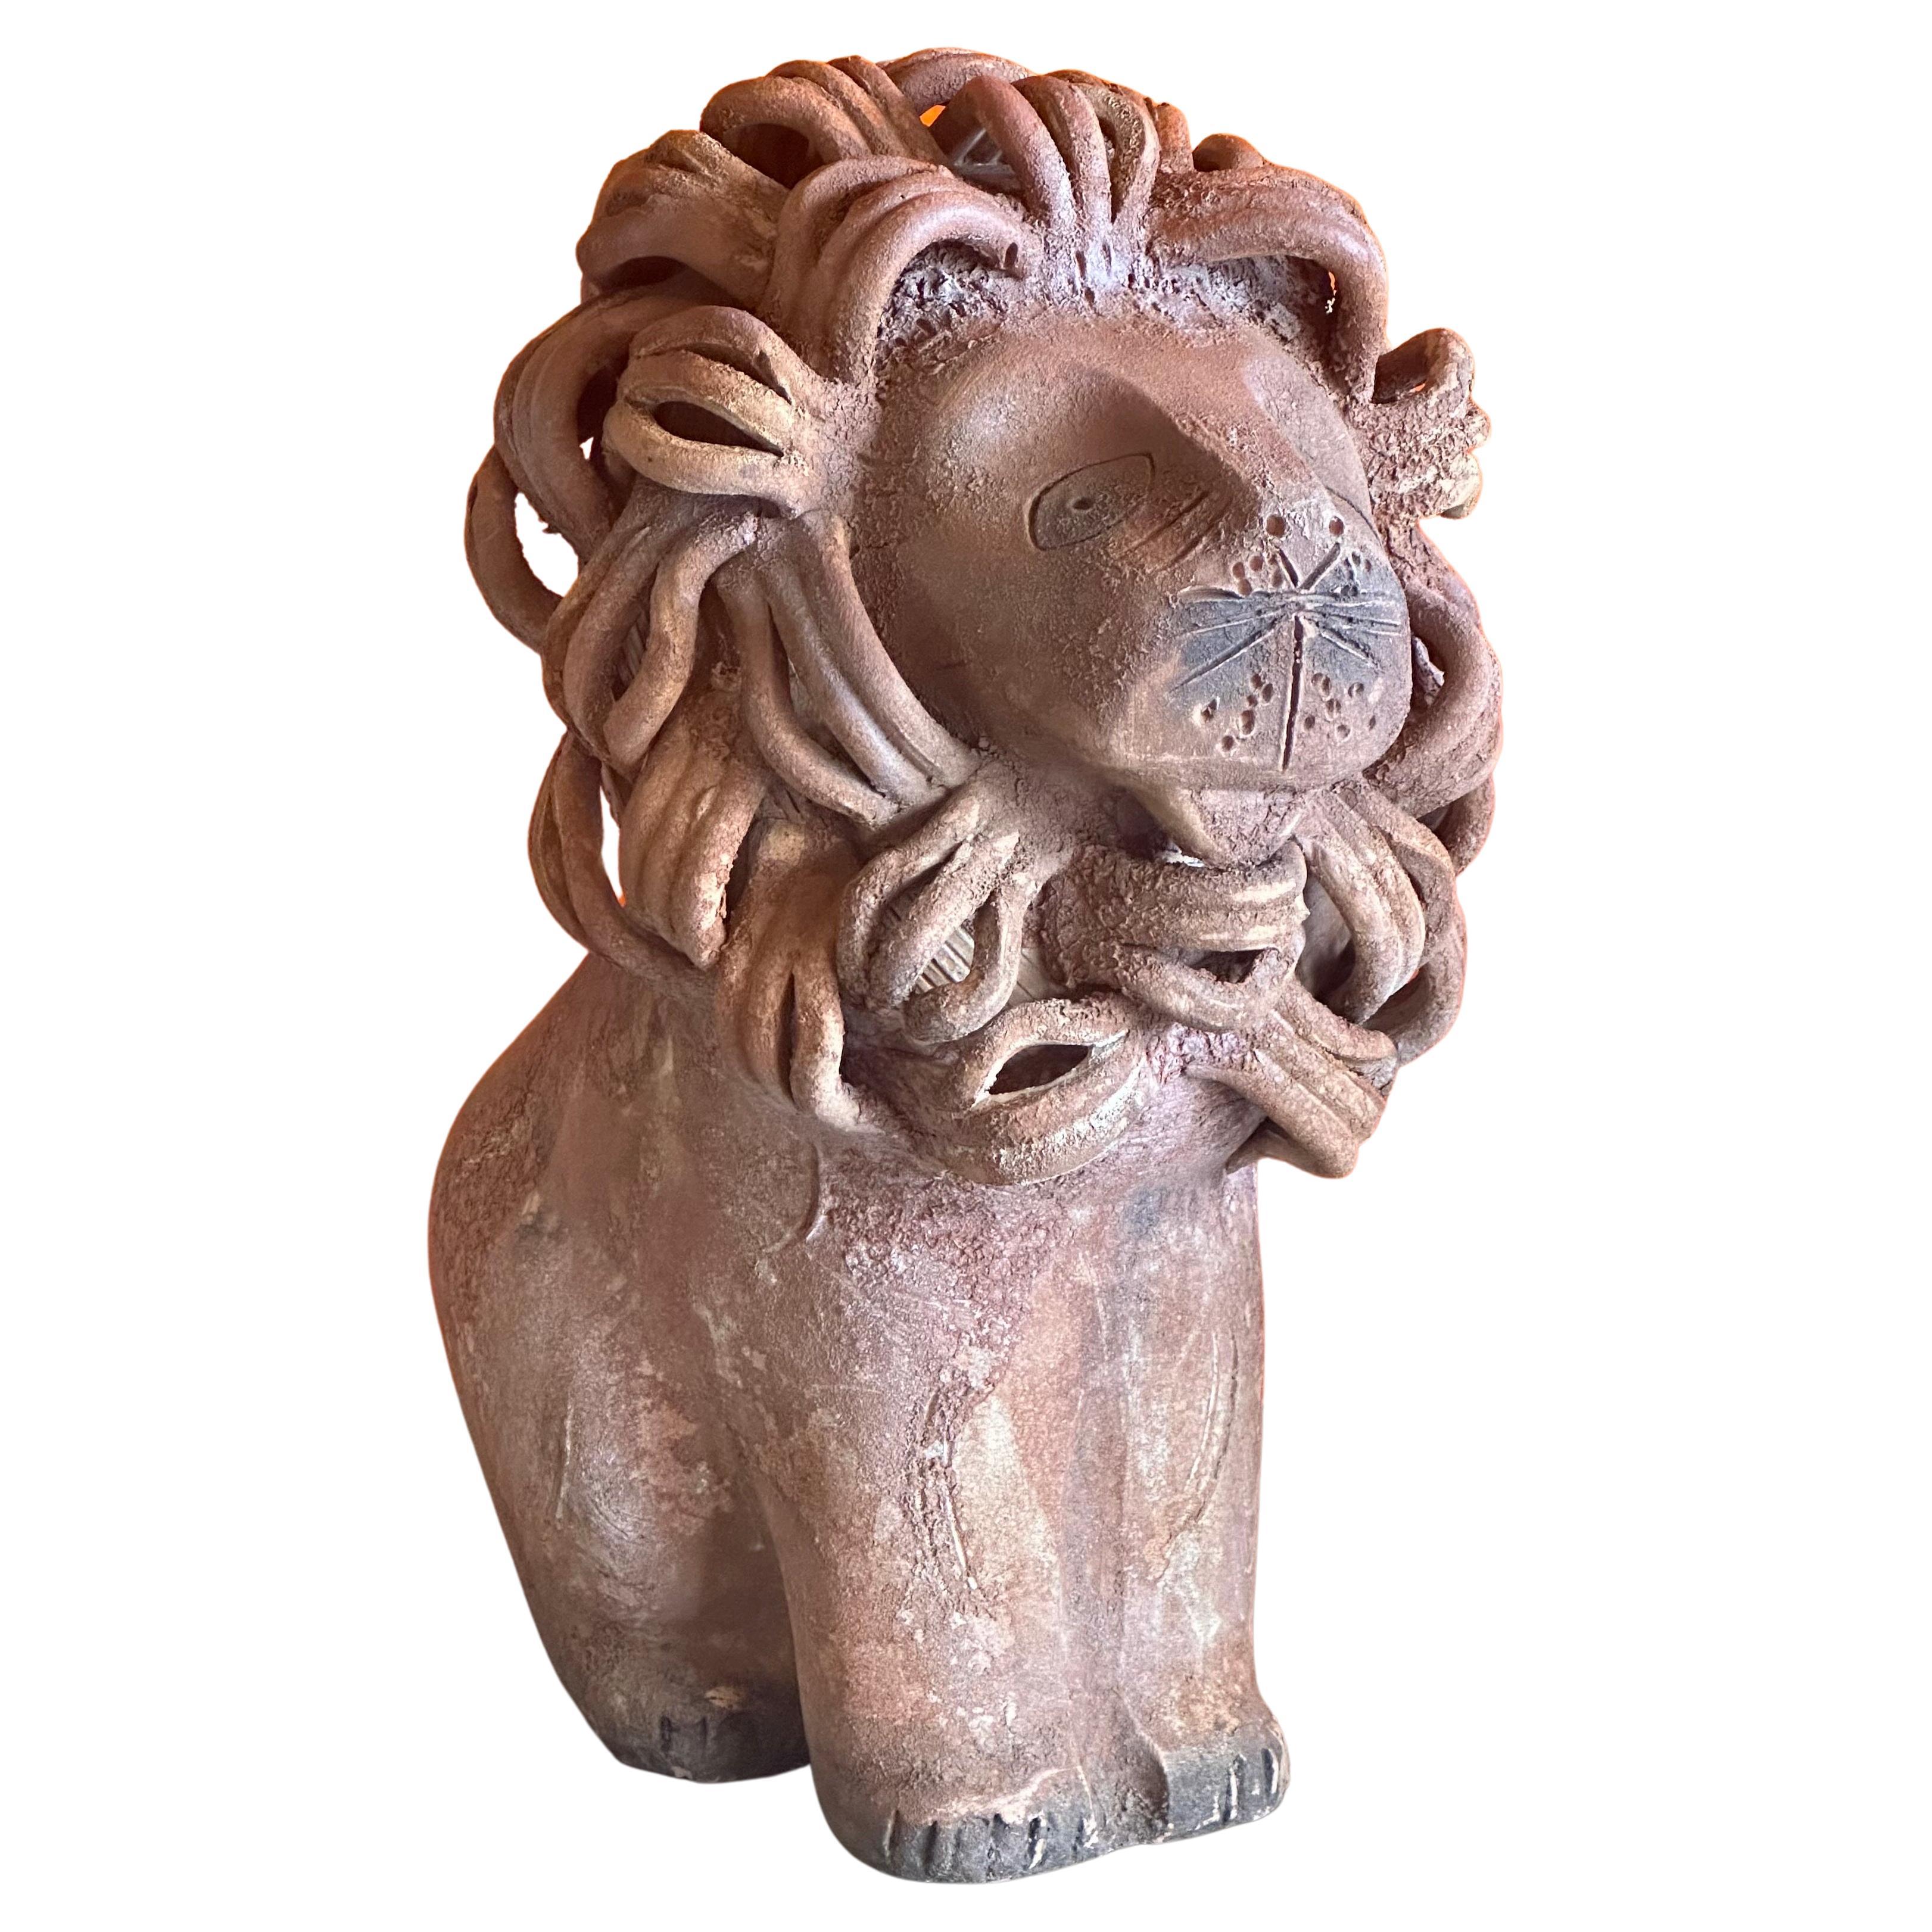 Eine wunderbare Vintage ceramiche / Keramik Löwe Skulptur von Aldo Londi für Bitossi Raymor, circa 1960er Jahre. Das Stück ist in einem sehr guten Vintage-Zustand mit einer braunen, rustikalen Terrakotta-ähnlichen Oberfläche und Textur.  Die